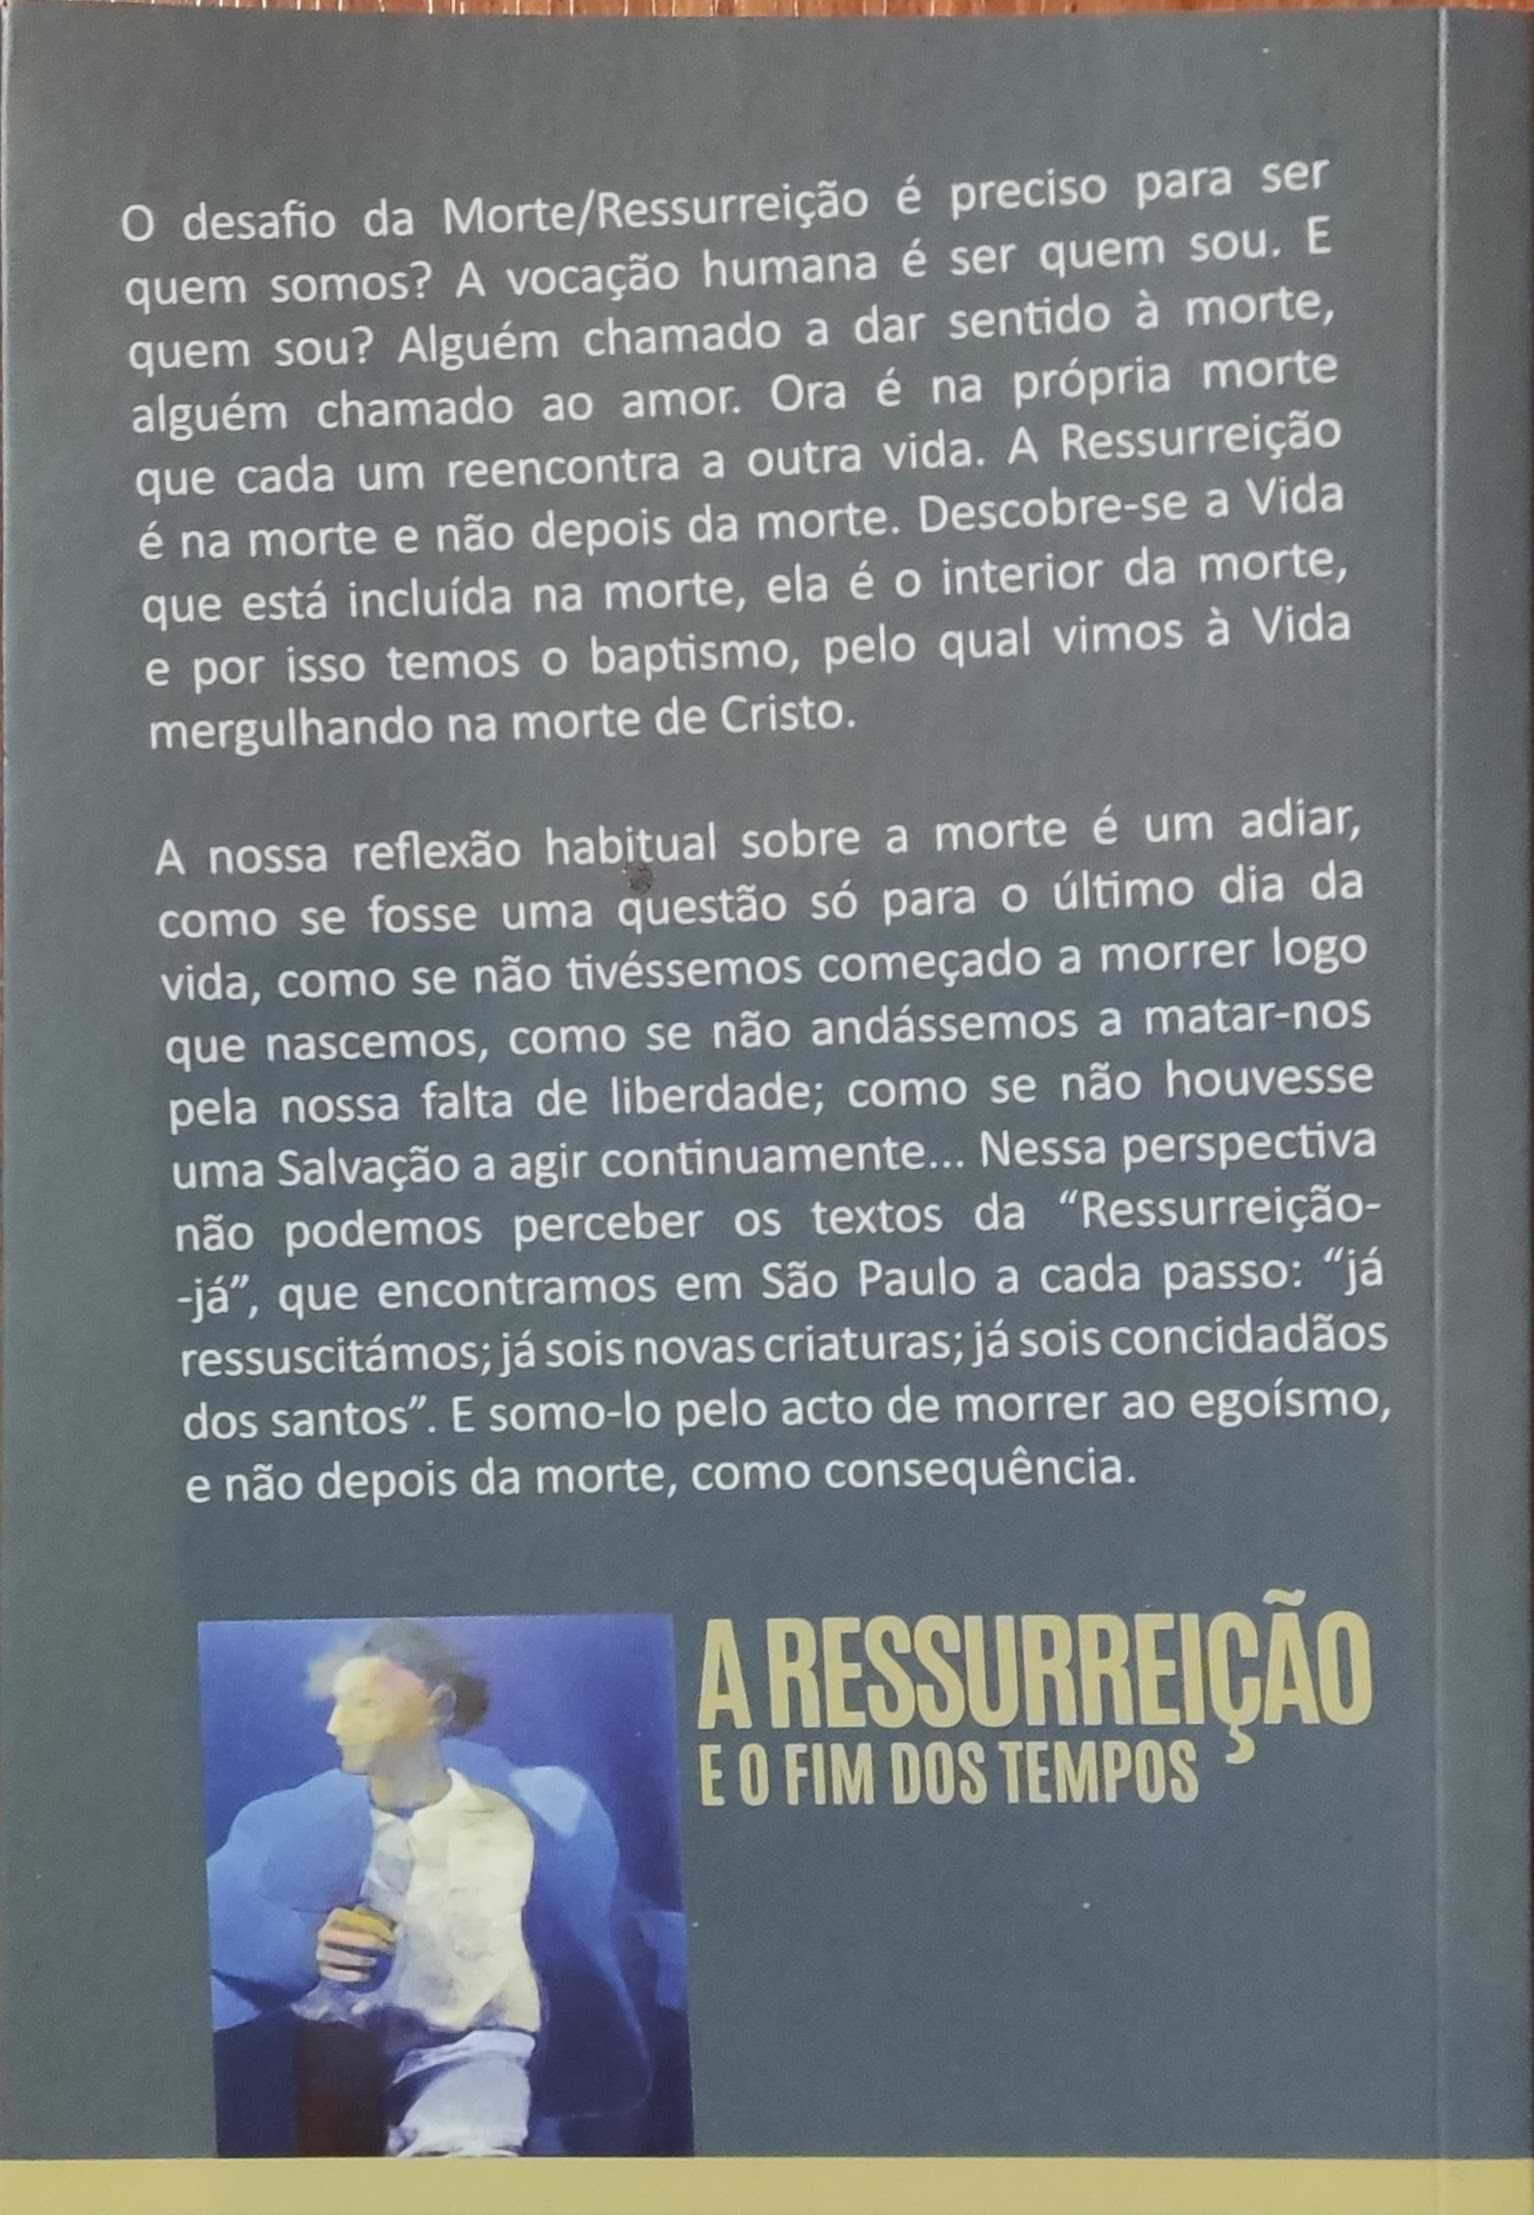 Livro "A Ressurreição e o fim dos tempos" Vasco Pinto de Magalhães